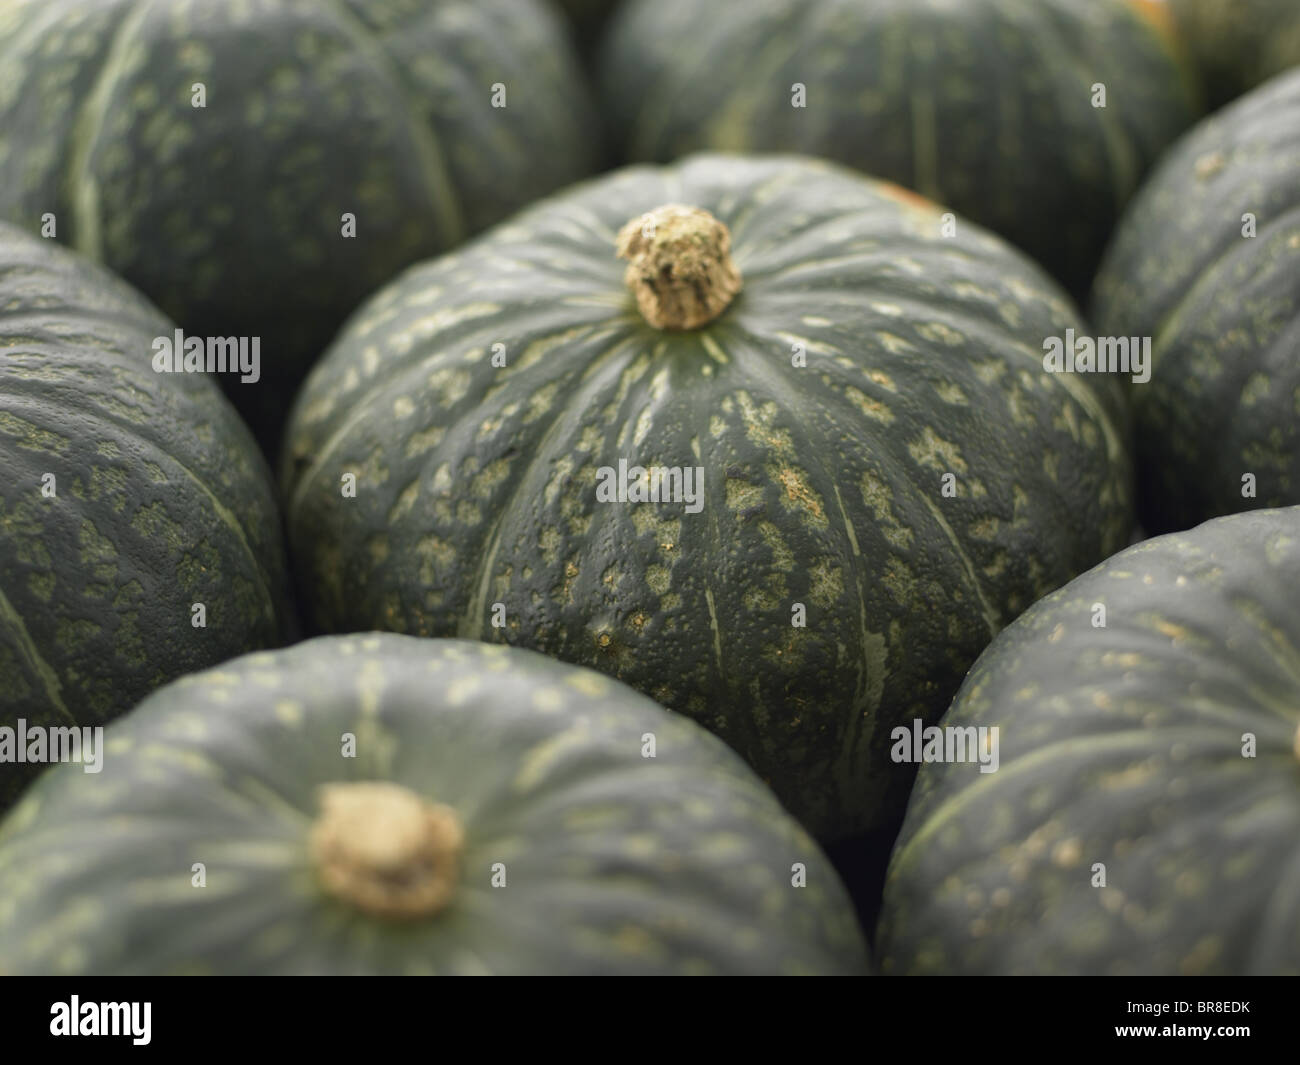 Close up of pumpkins, full frame Banque D'Images